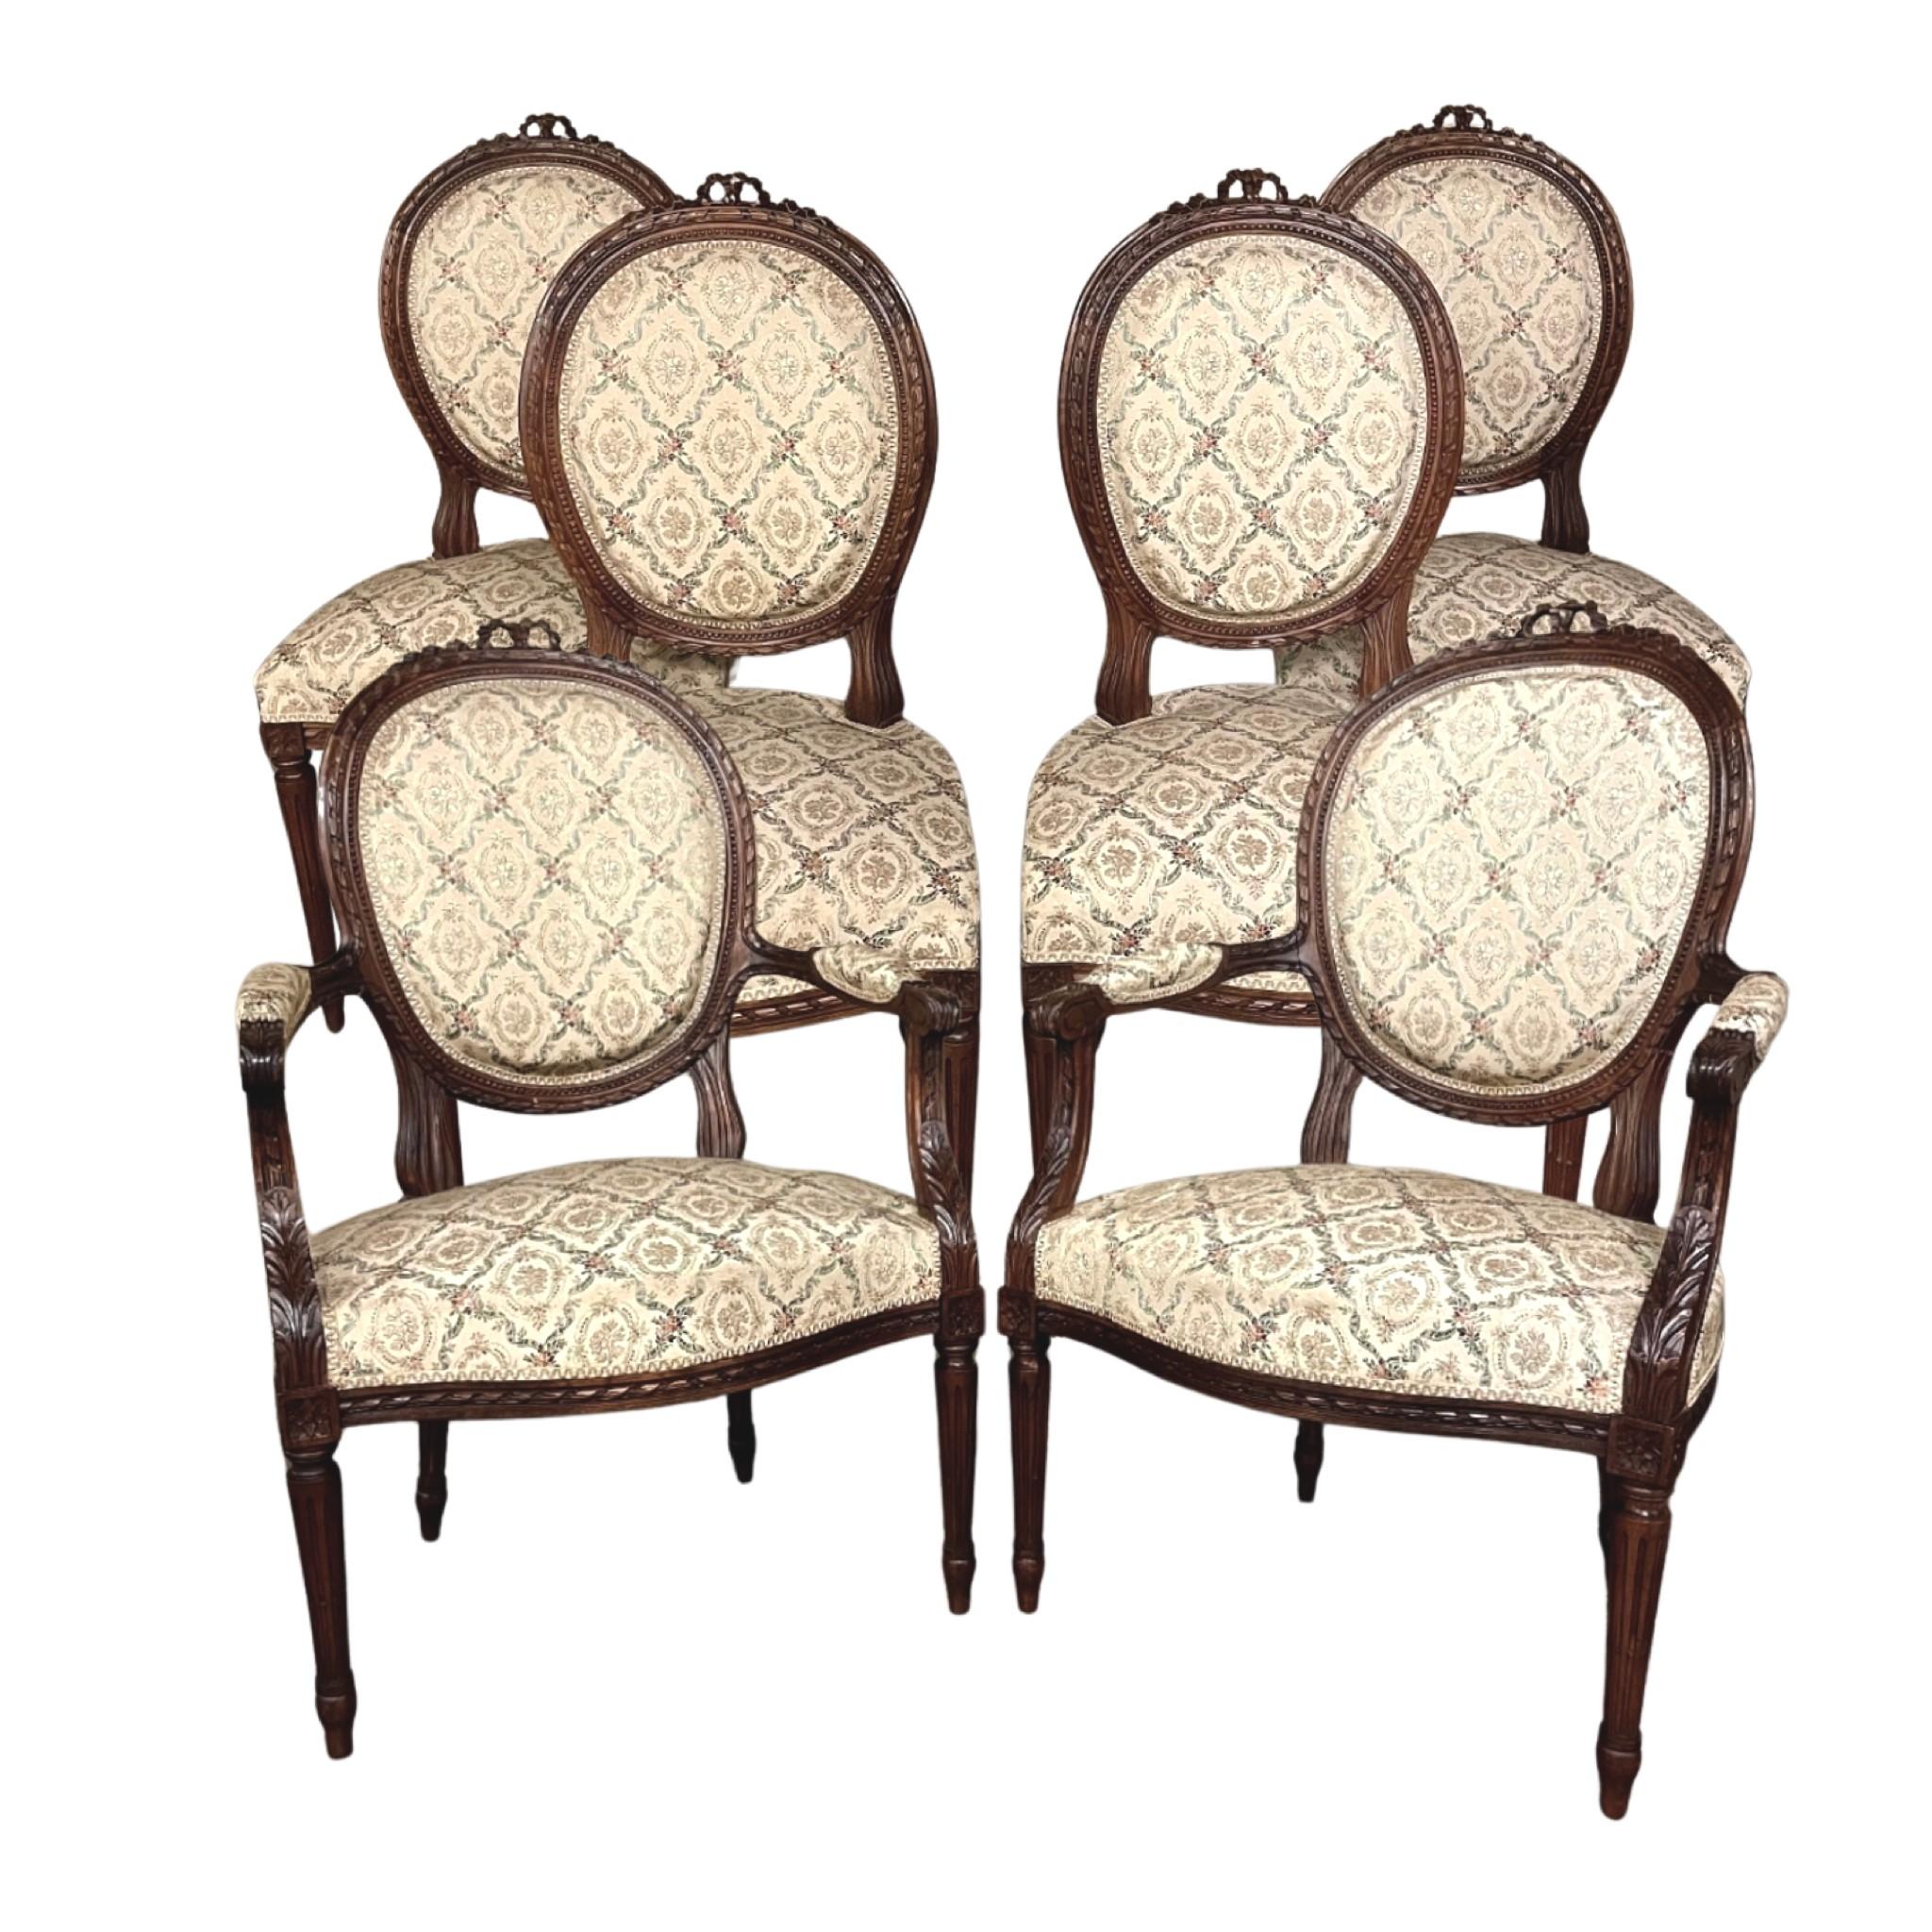 Ensemble de quatre chaises en noyer de style Louis XVI du XIXe siècle est un classique intemporel ! Avec ses dossiers ovales incurvés et ses sièges généreux, l'ensemble offre un confort surprenant, et la très haute qualité de la sellerie garantit